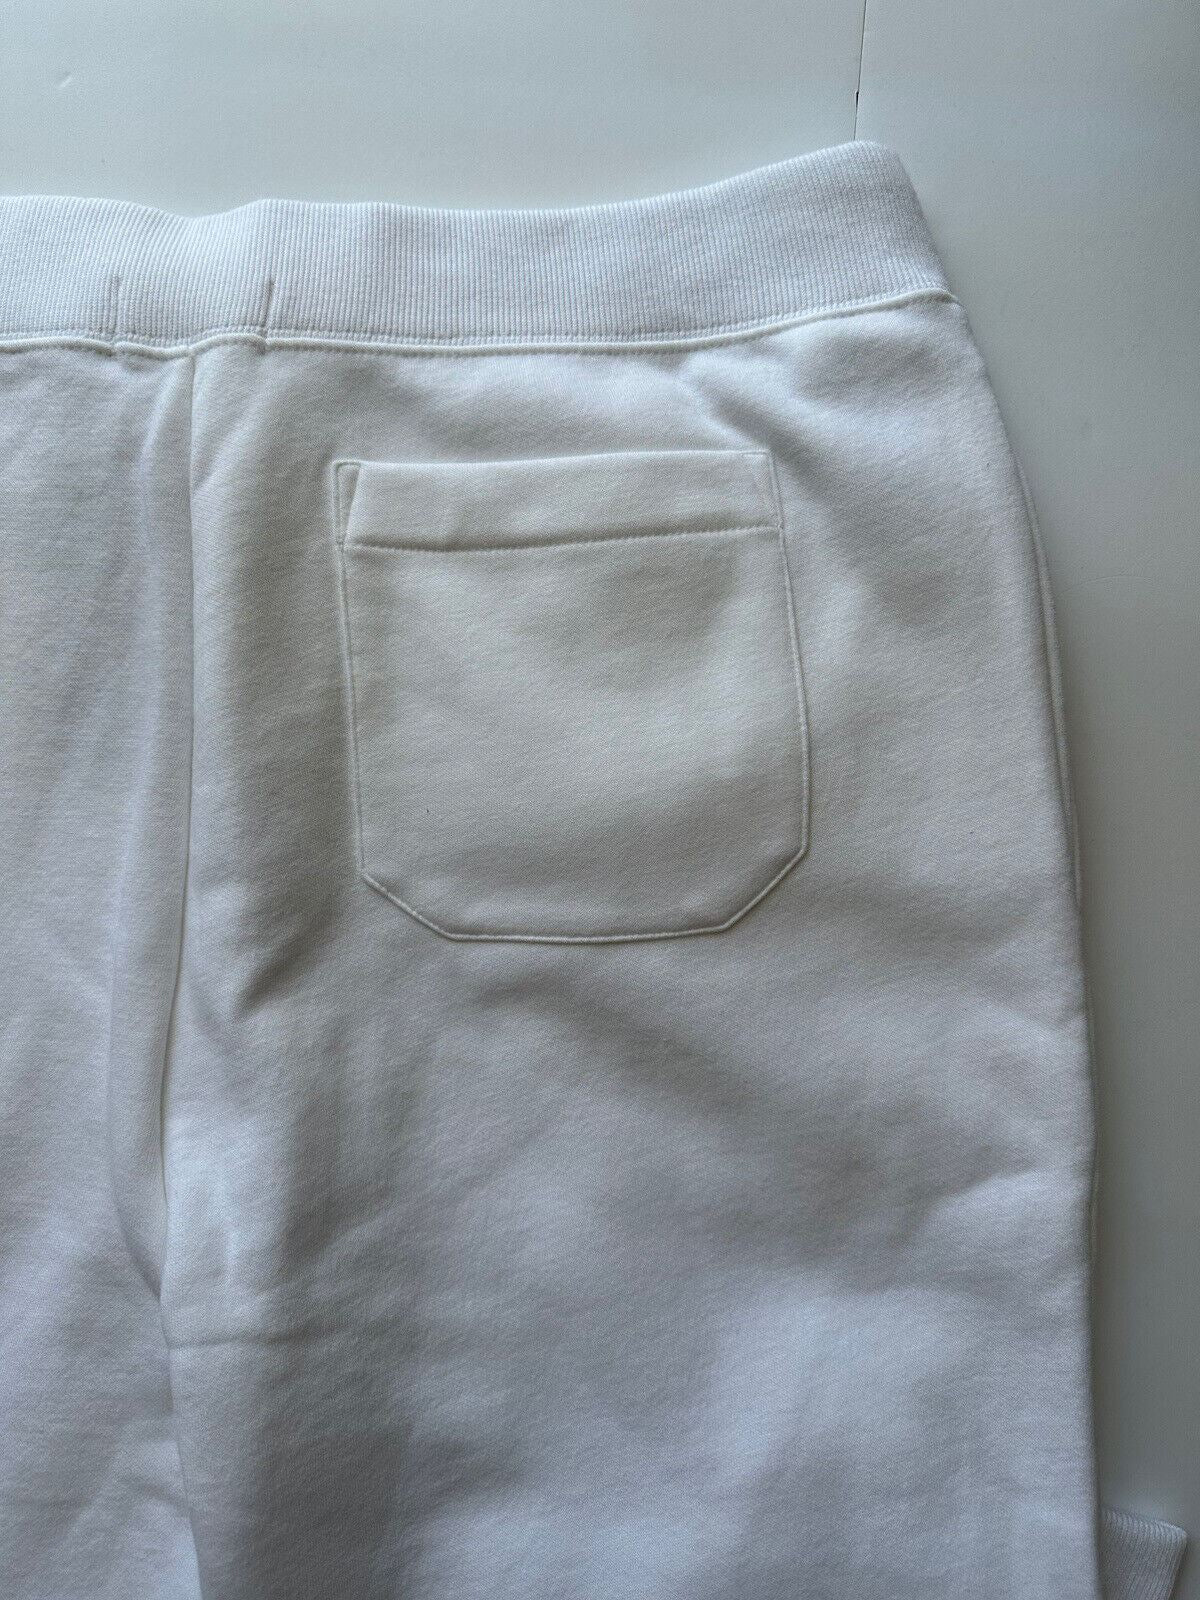 Neu mit Etikett: 138 $ Polo Ralph Lauren Herren-Jogginghose mit Polo-Logo in Weiß, lässig, XL/TG